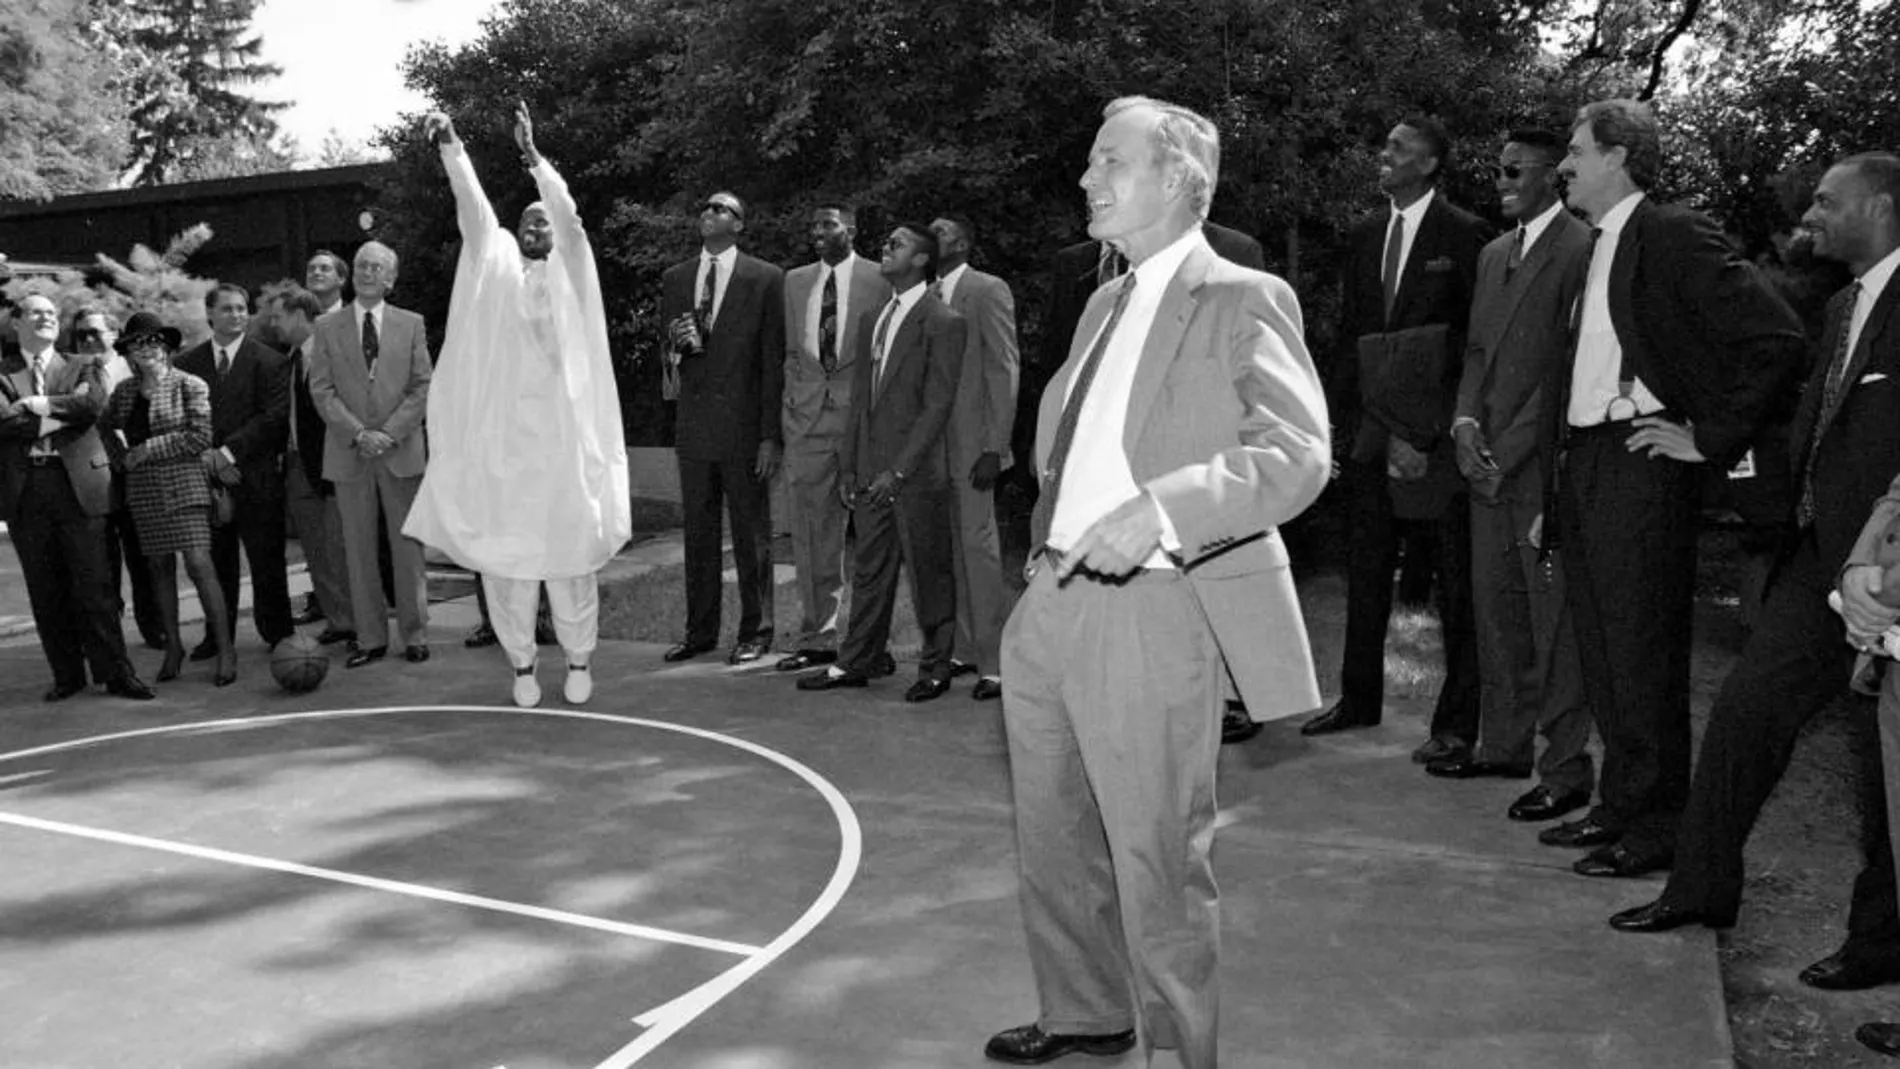 Craig Hodges lanza en la cancha de baloncesto de la Casa Blanca junto a George Bush